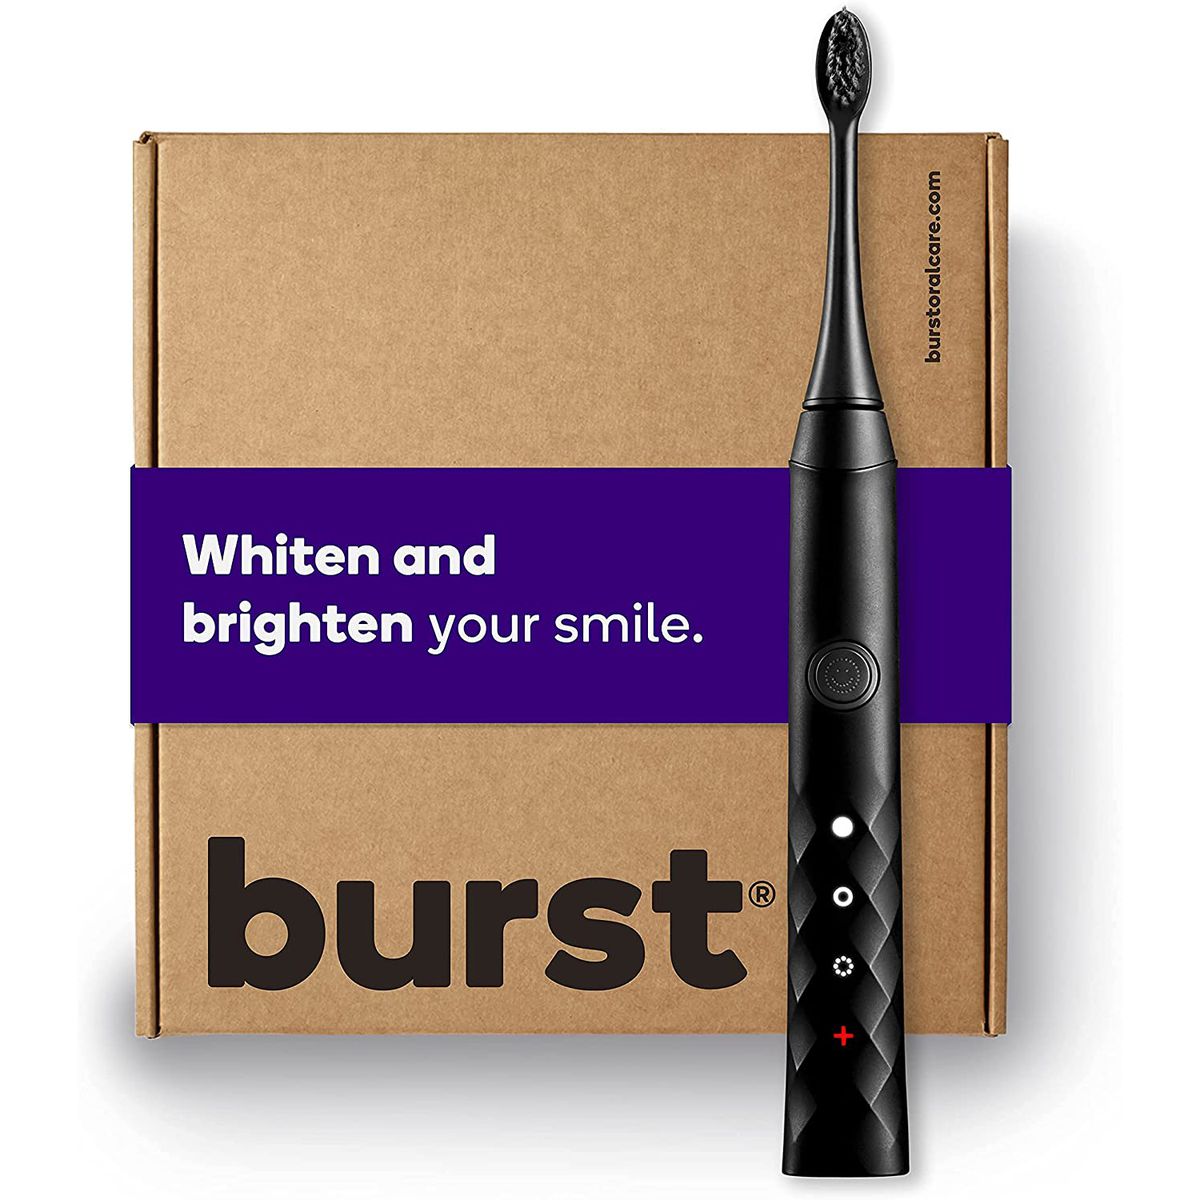 Electric Toothbrush on Amazon